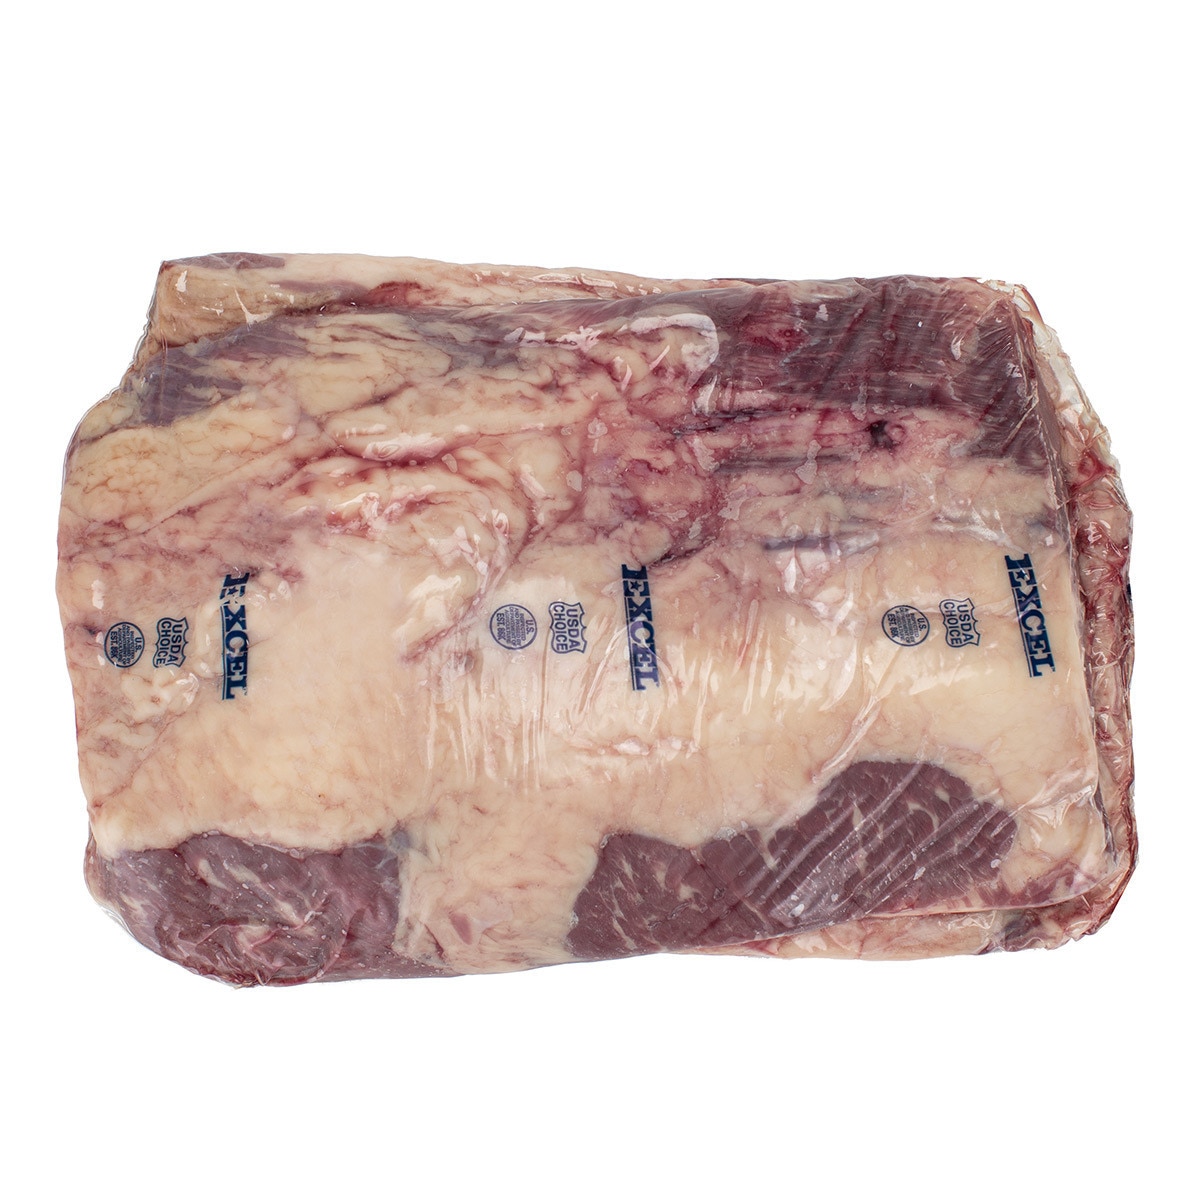 美國特選冷凍胸腹肉(修清牛五花) 19公斤 / 箱